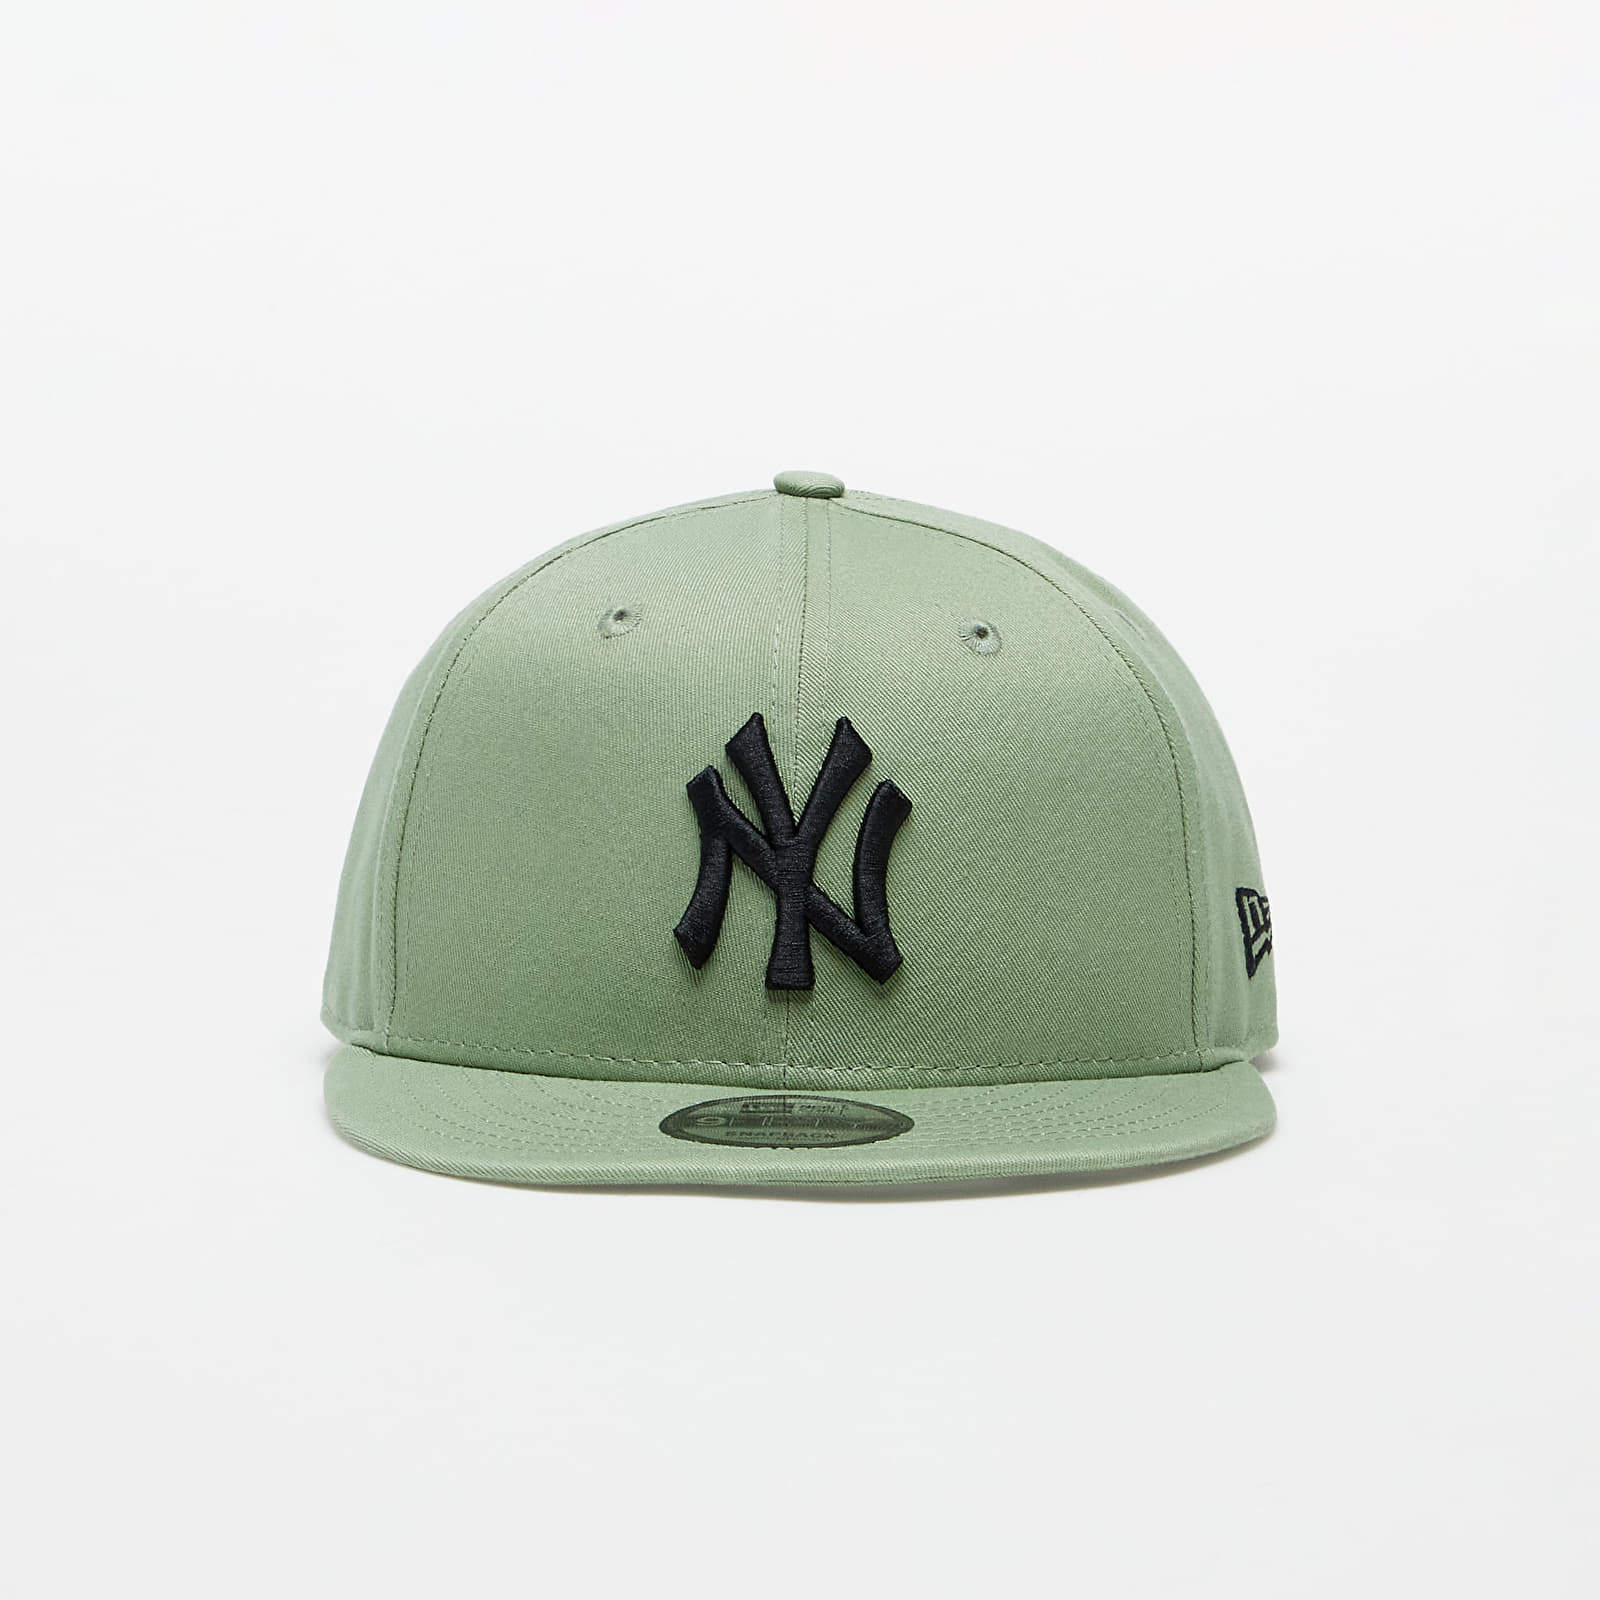 Caps New Era New York Yankees League Essential 9FIFTY Snapback Cap Khaki